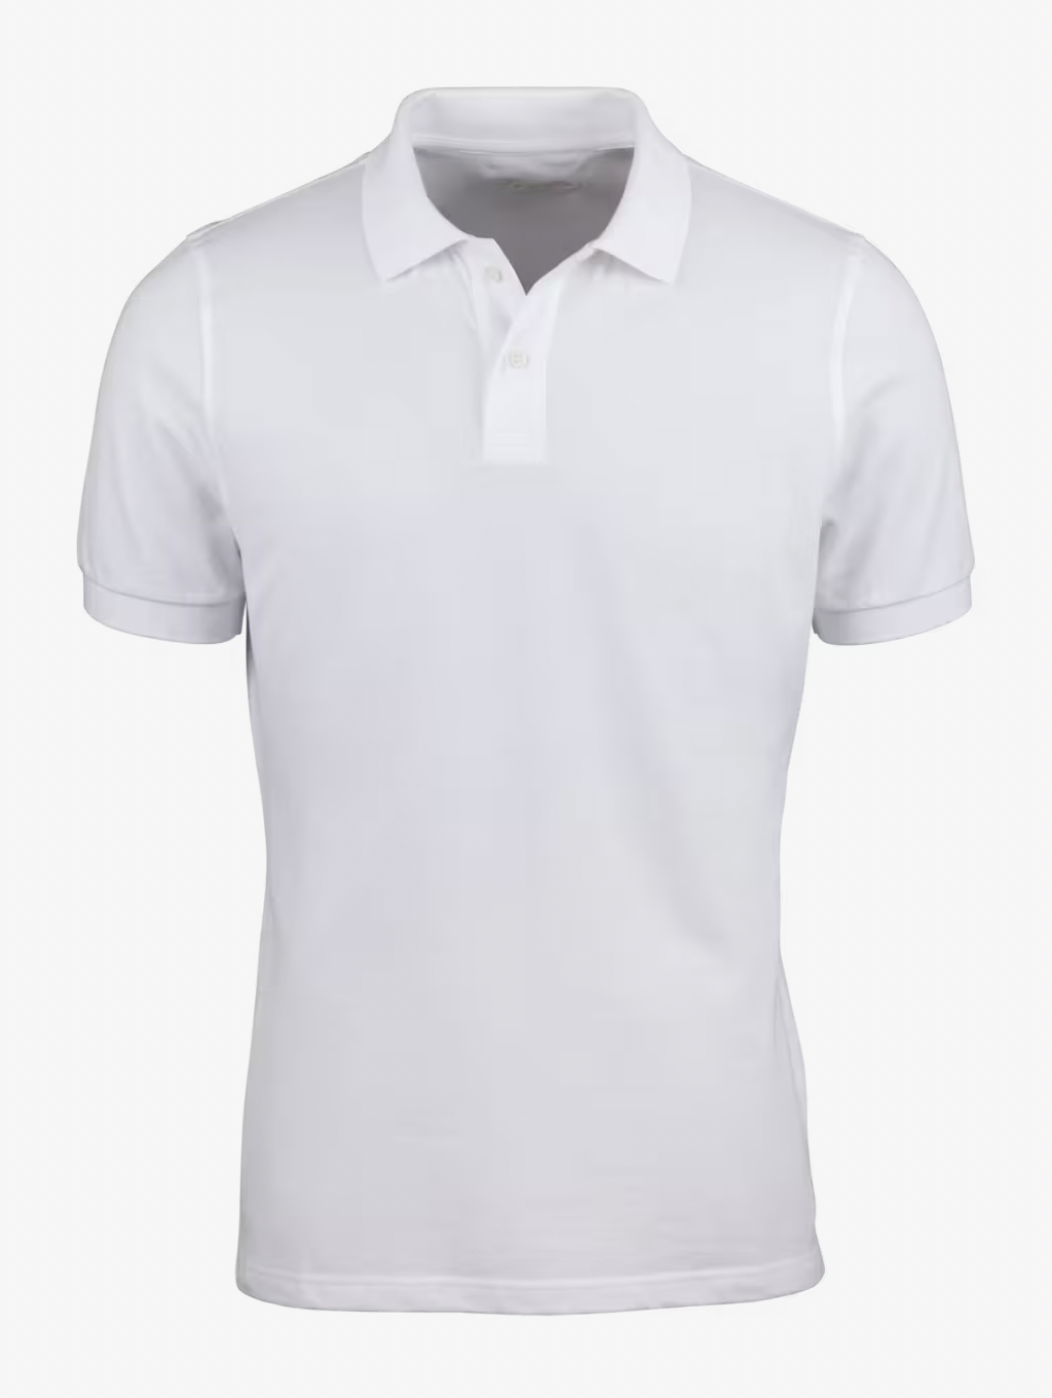 Polo Shirt Cotton Pique